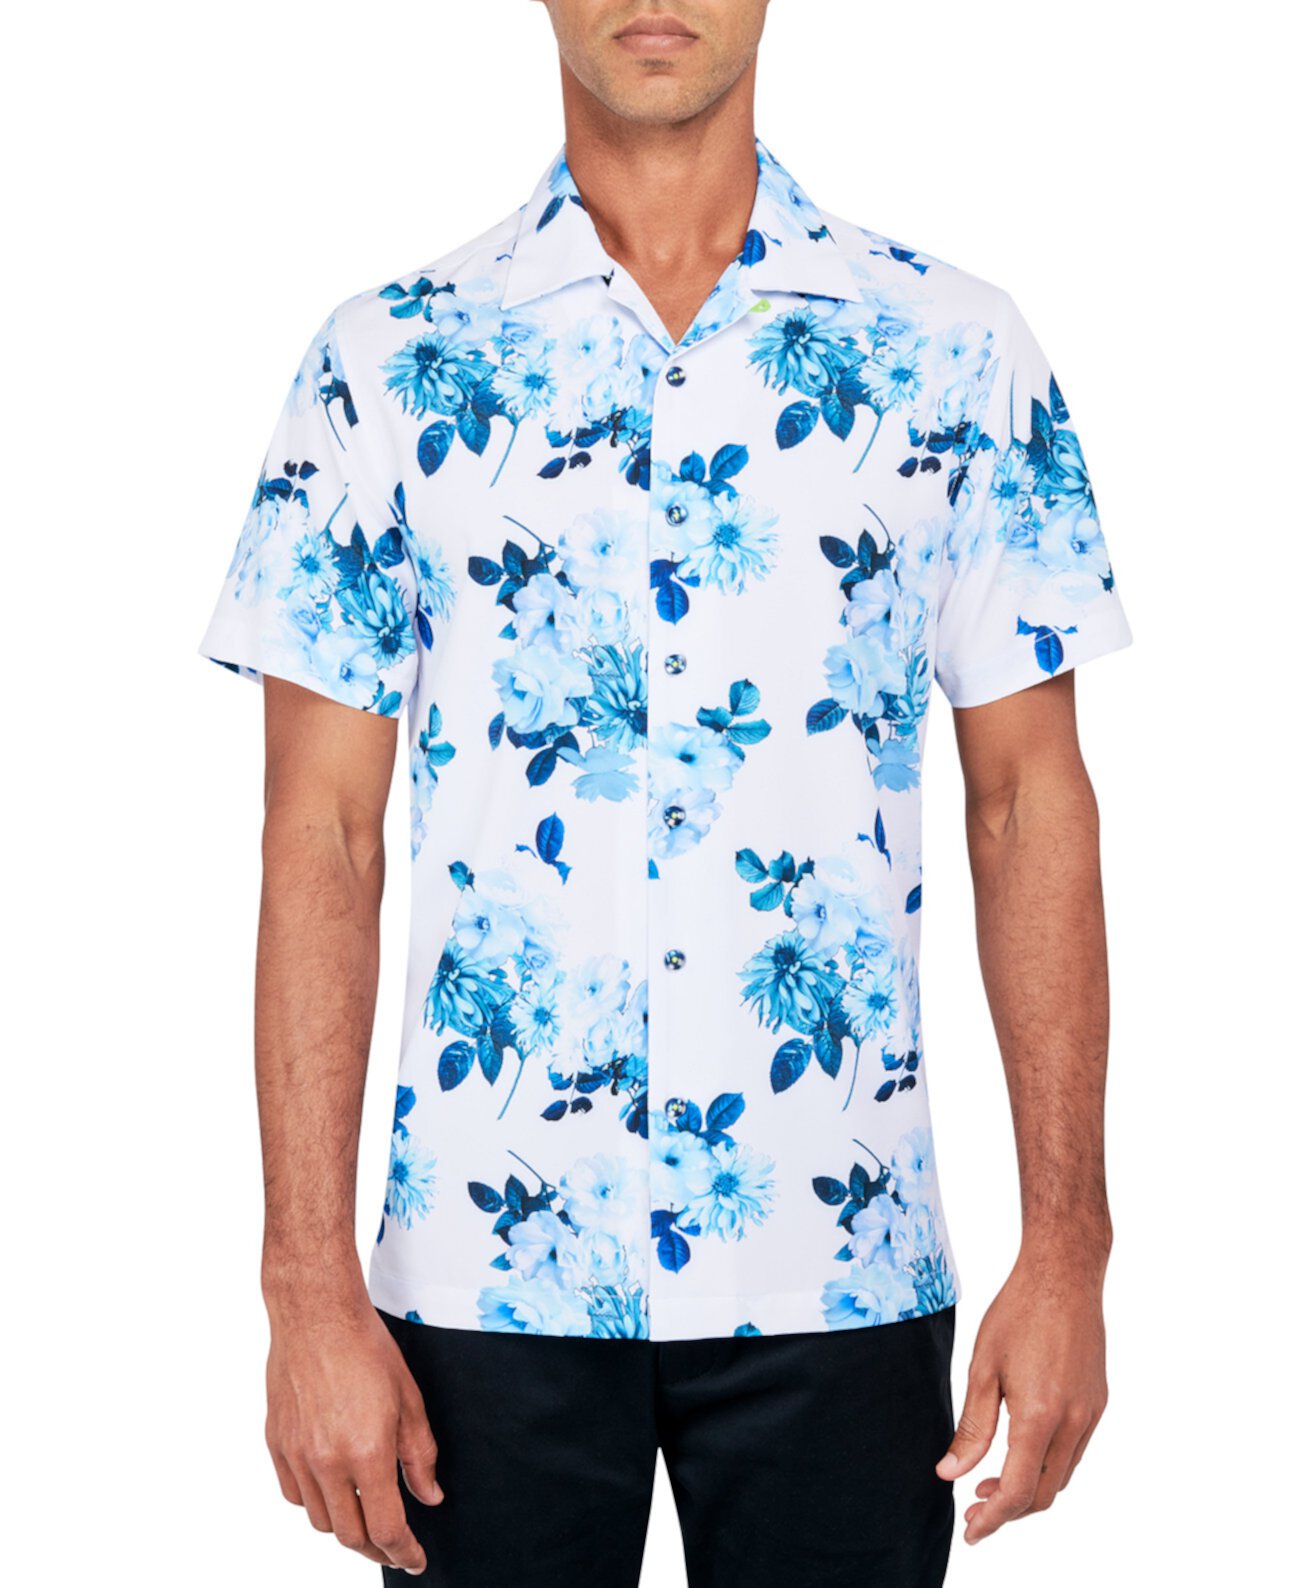 Мужская рубашка стандартного кроя без железа, эластичная, с цветочным принтом, на пуговицах, походная рубашка Society of Threads